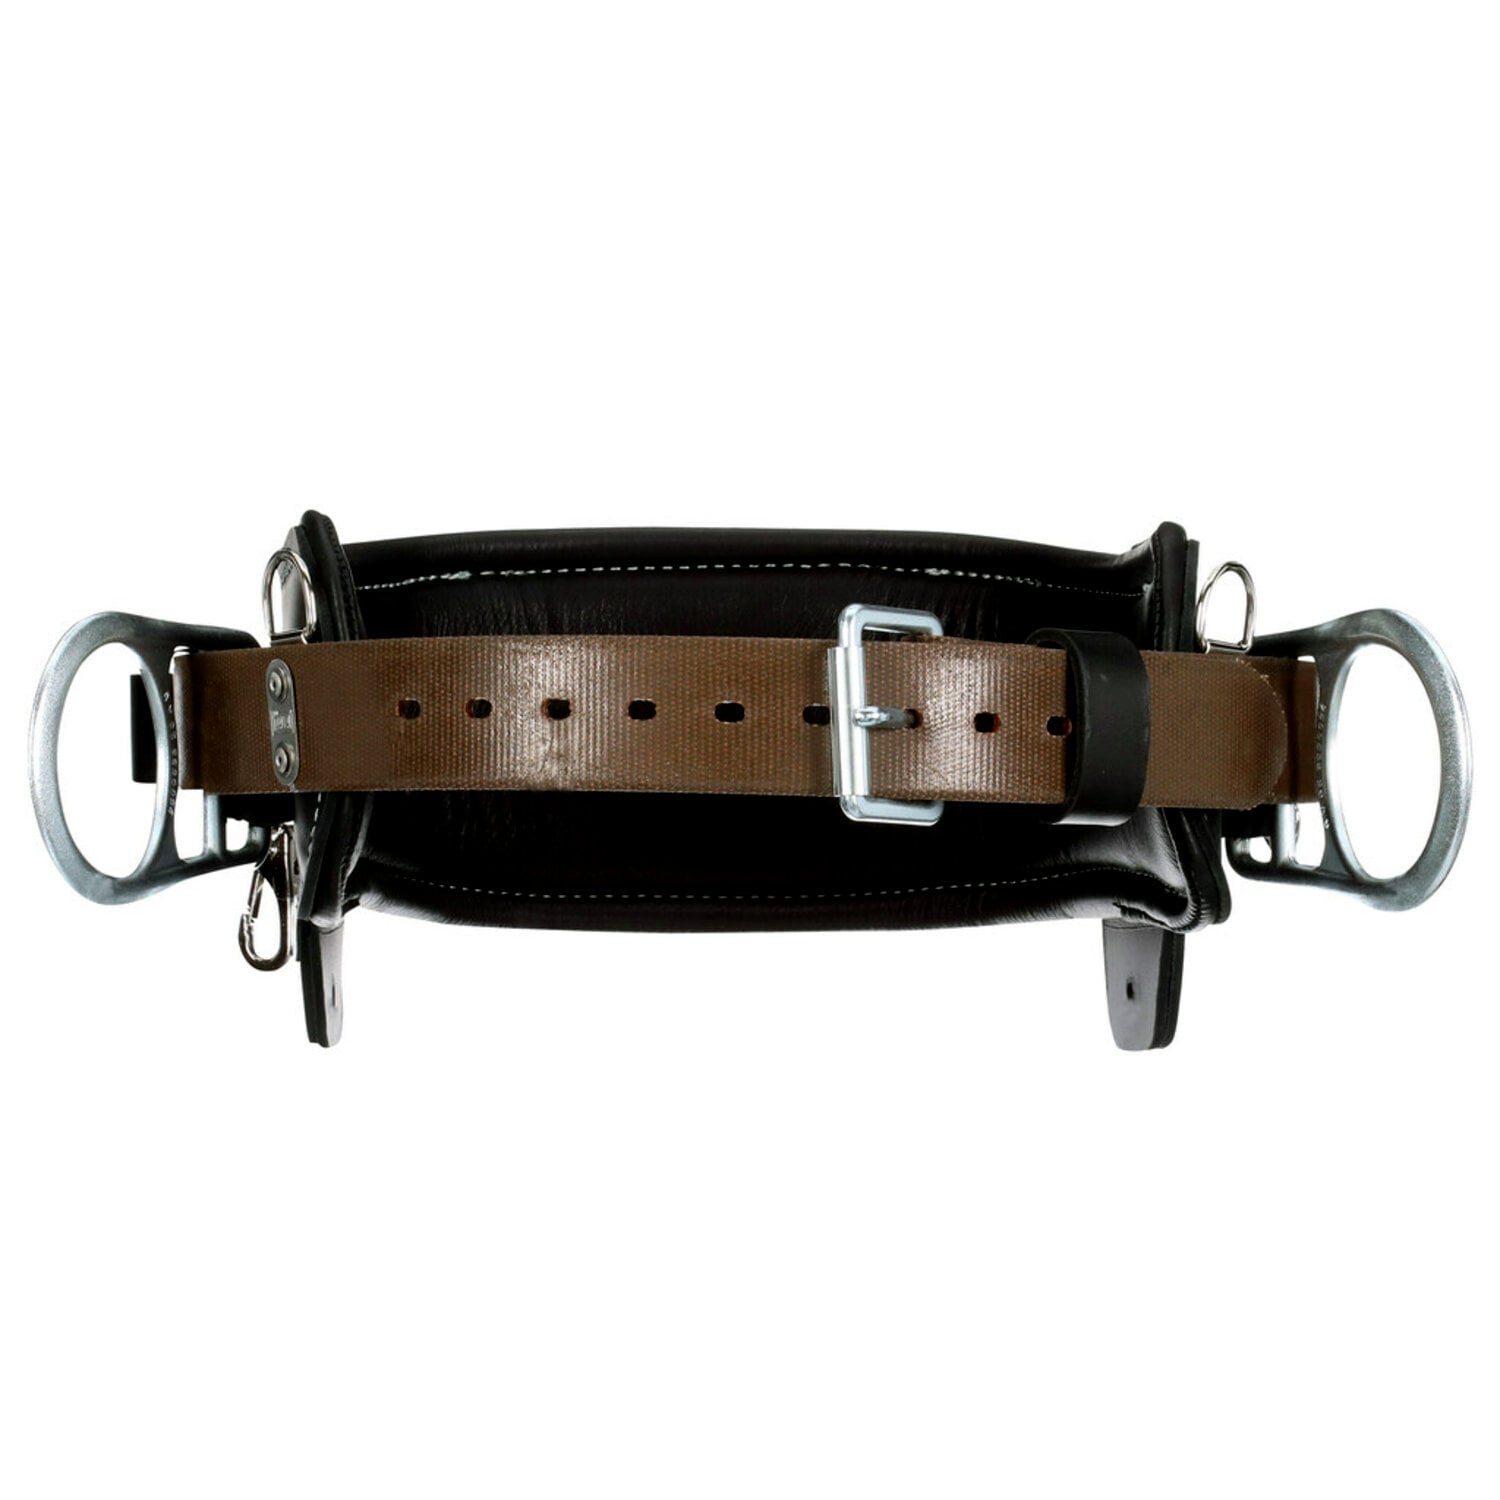 7012815140 - 3M DBI-SALA 2D Lineman Tongue Buckle Positioning Belt 1003246, Leather, Black, D24